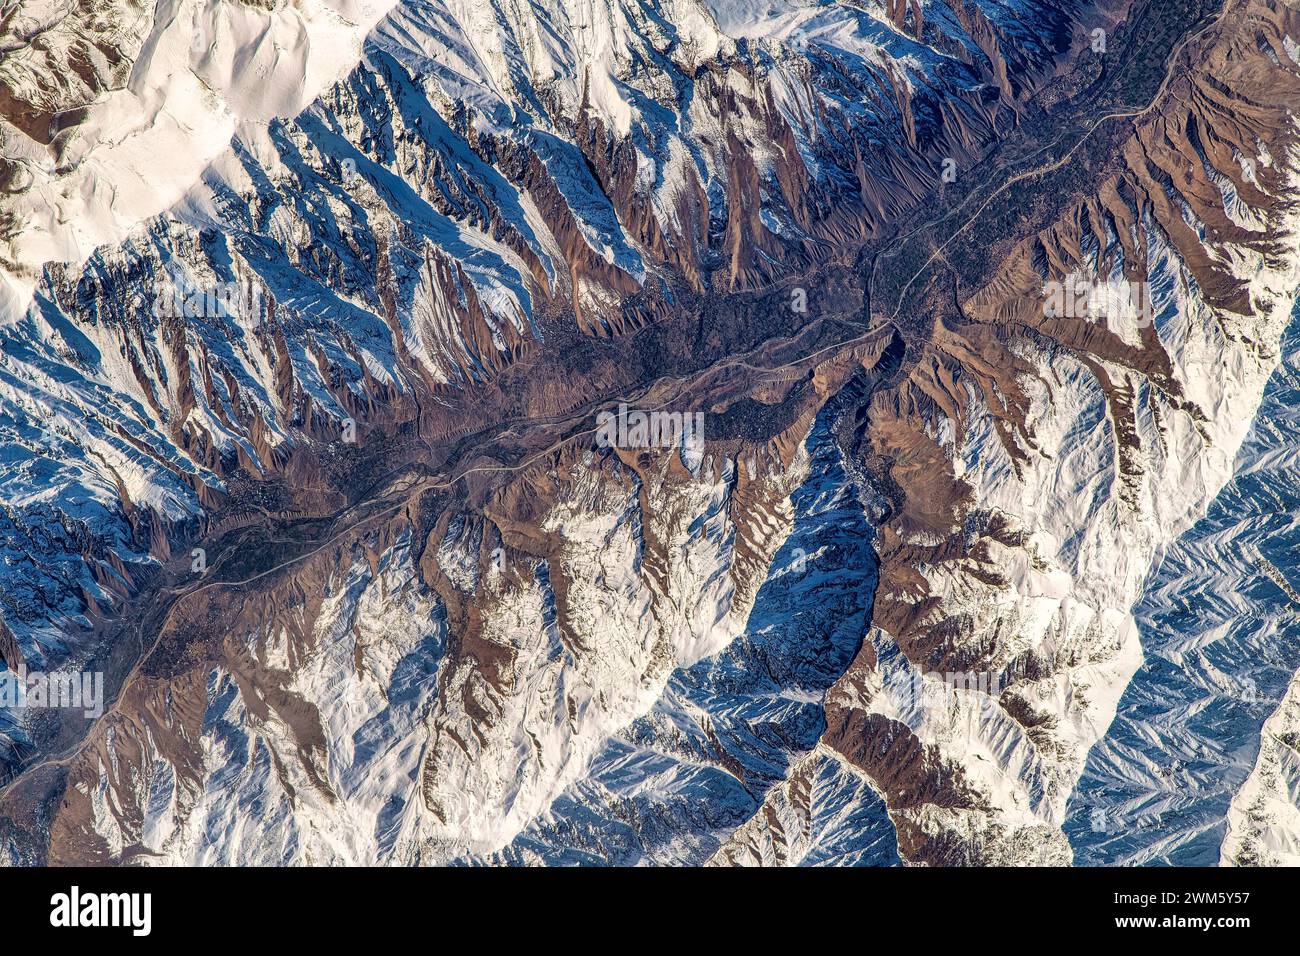 Berge in Afghanistan. Digitale Bildverbesserung durch die NASA Stockfoto